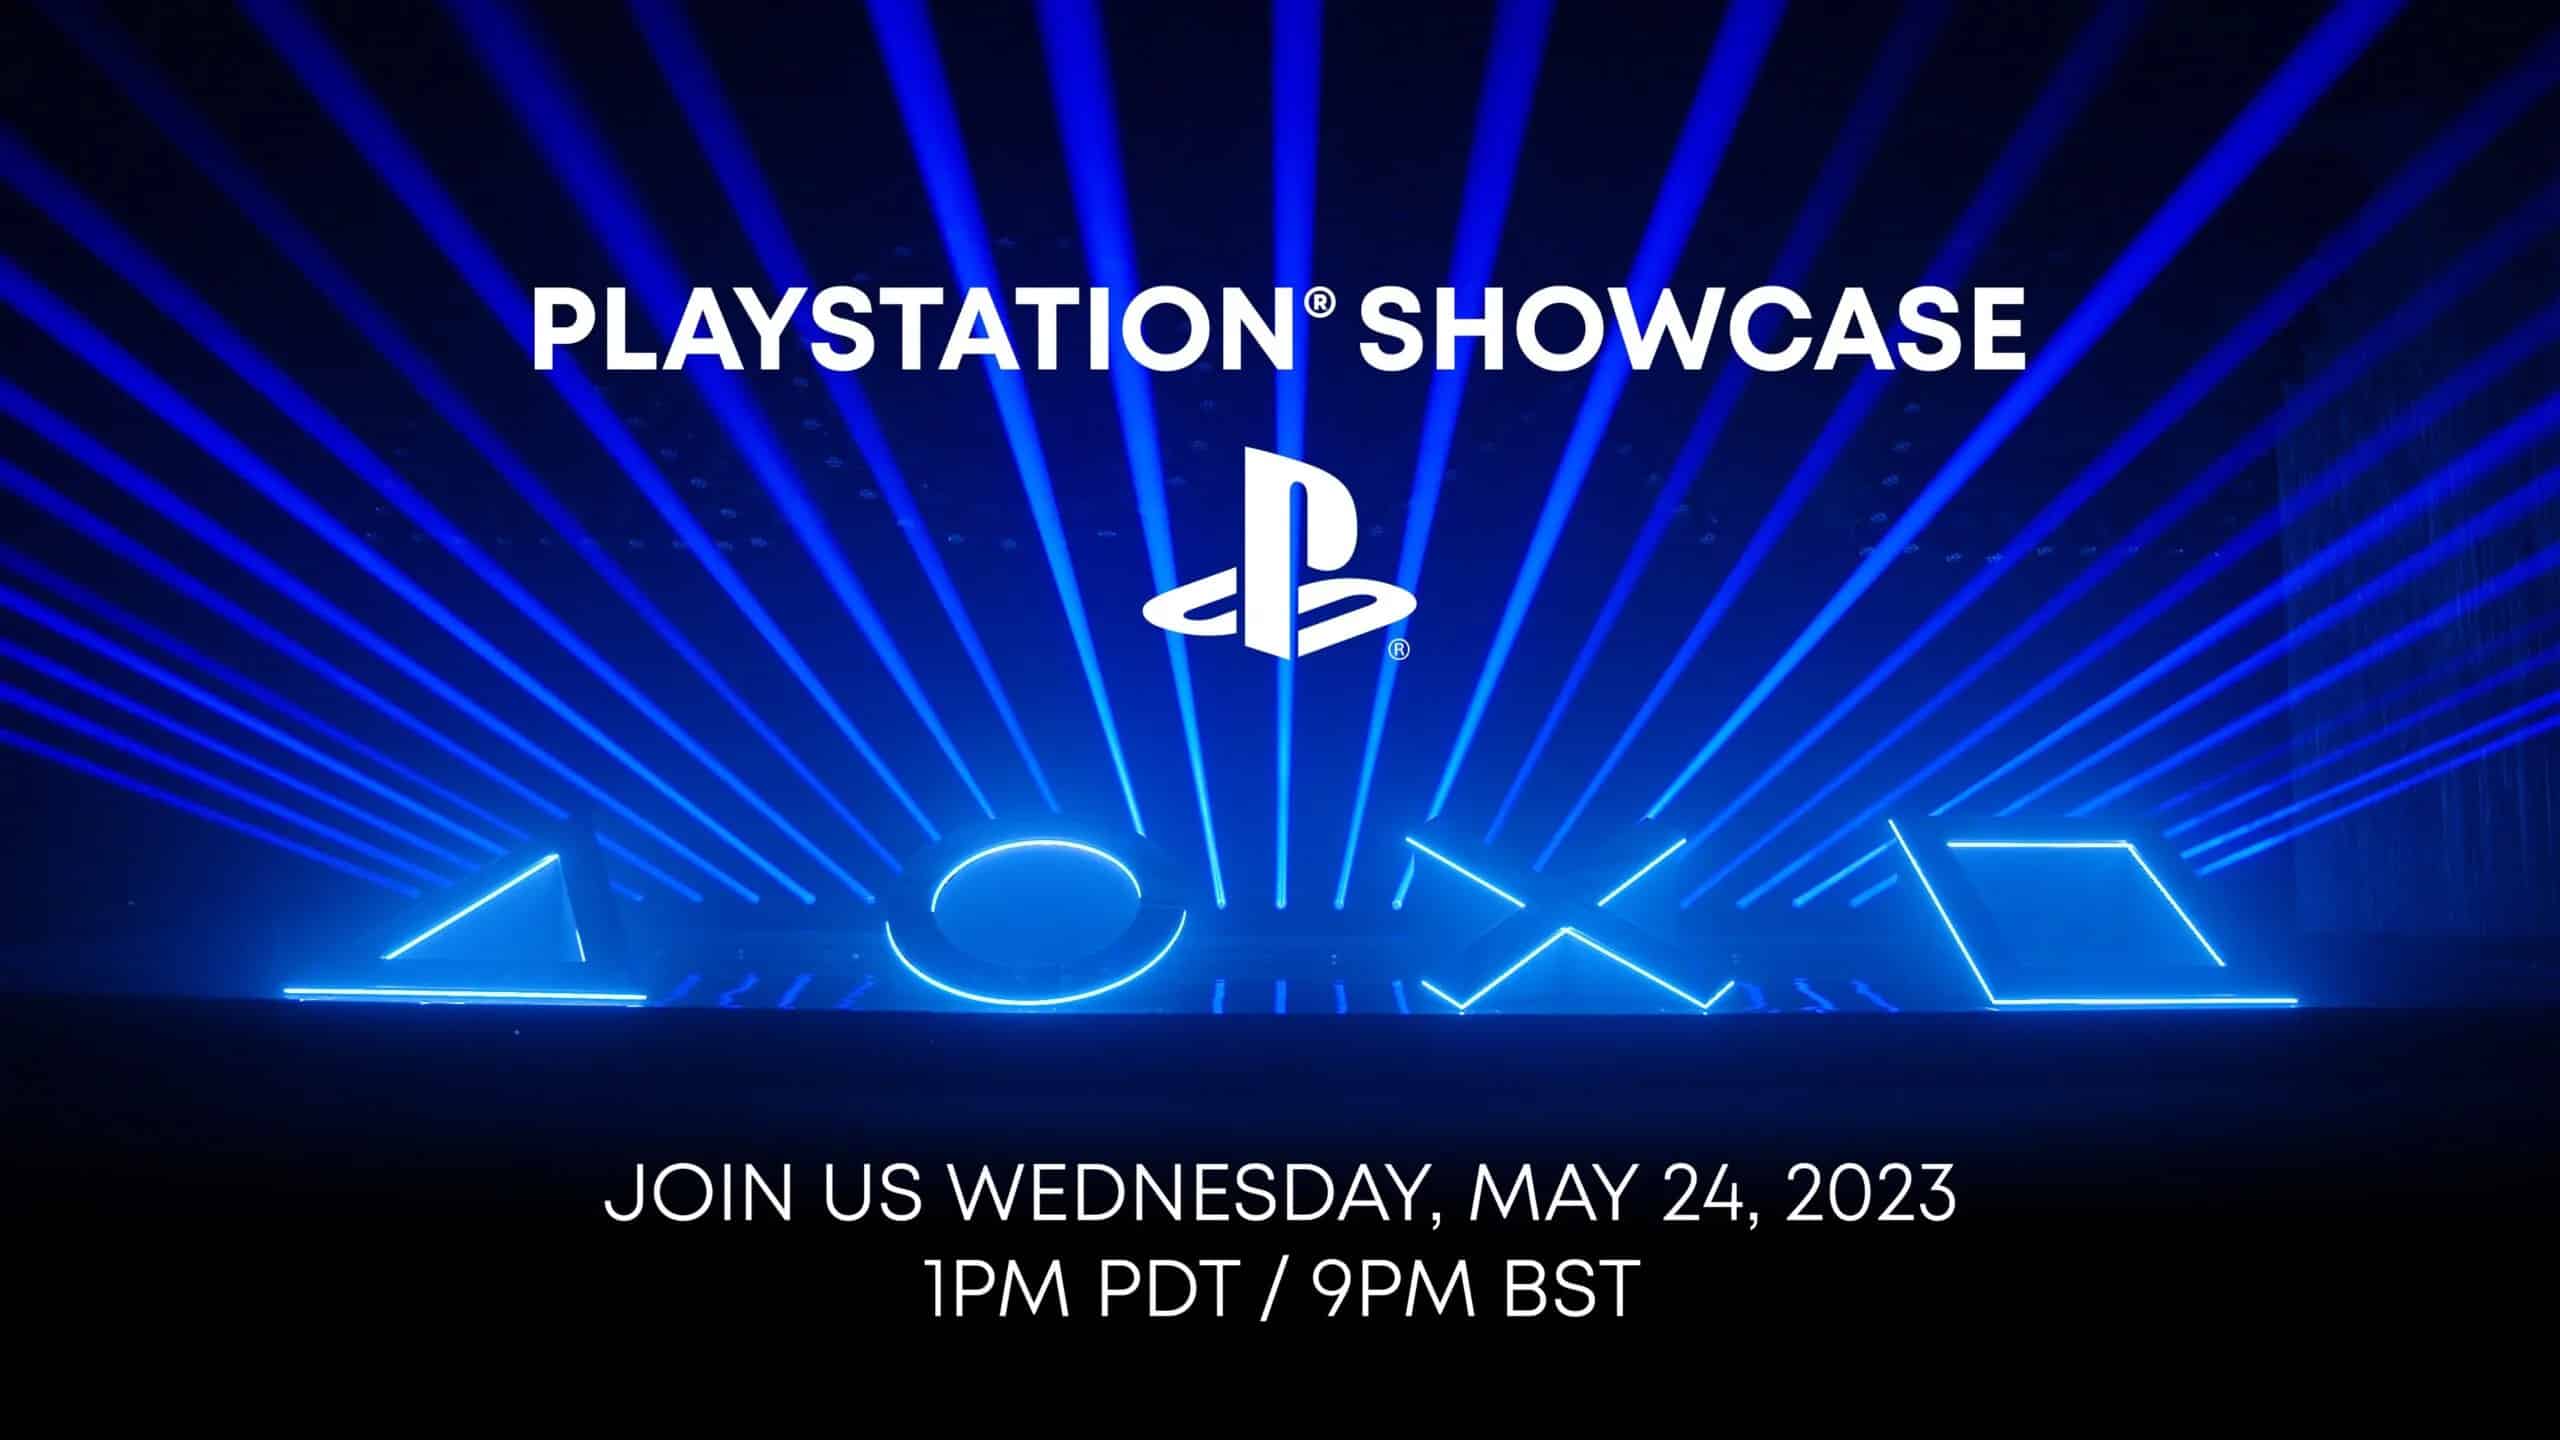 PlayStation Showcase 2023 Roundup